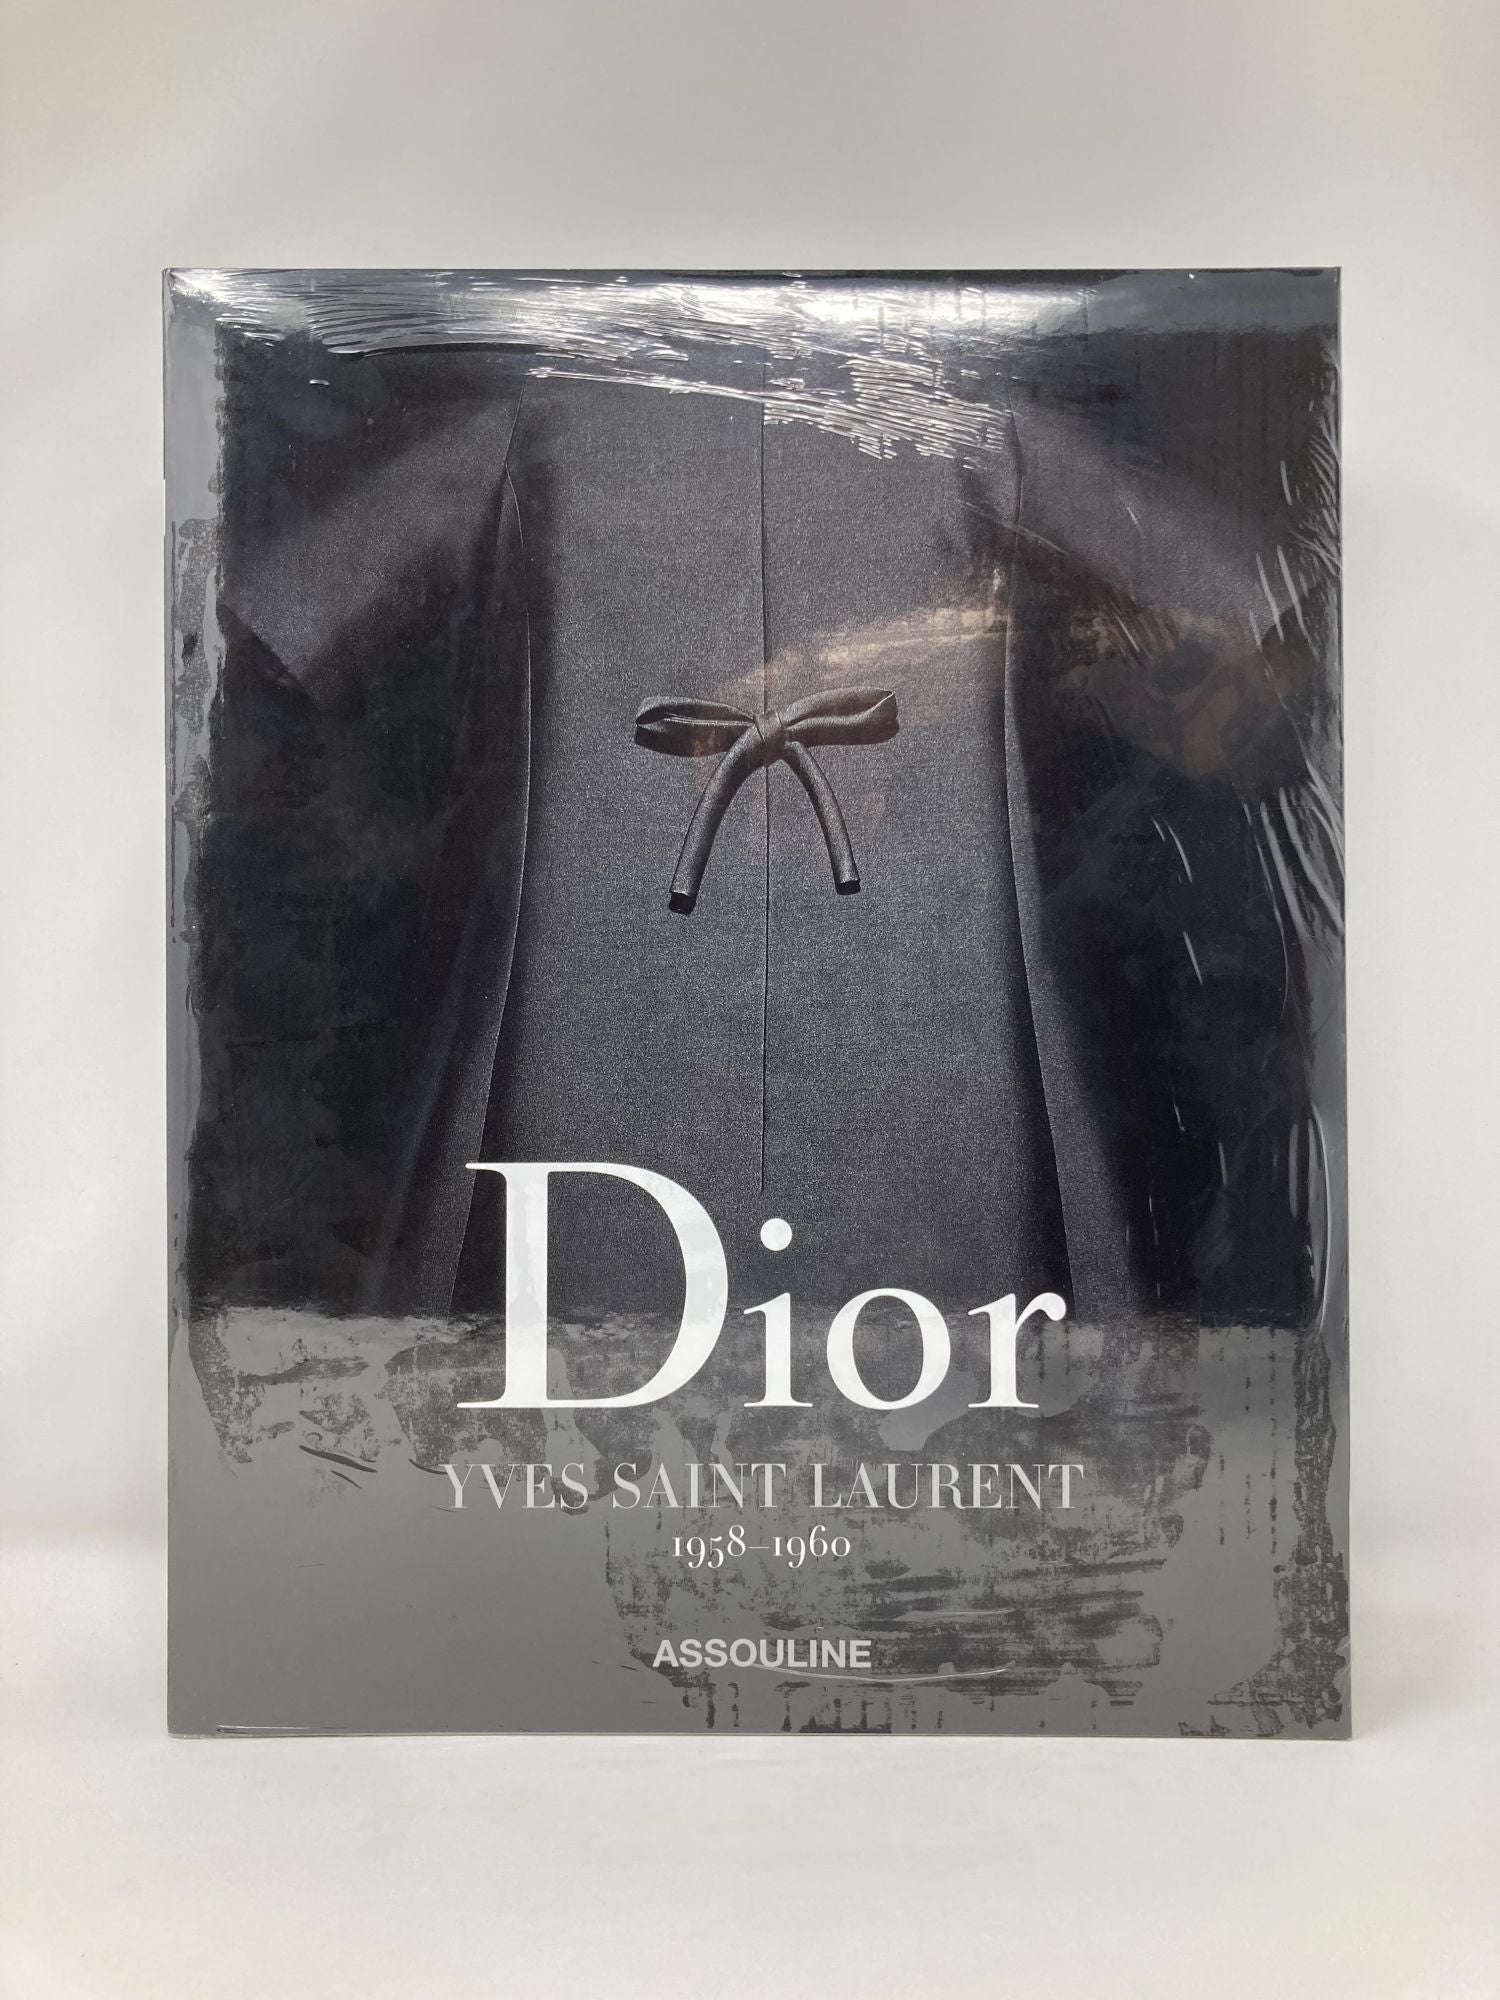 Dior by Yves Saint Laurent | Laurence Benaim, Laziz, Hamani